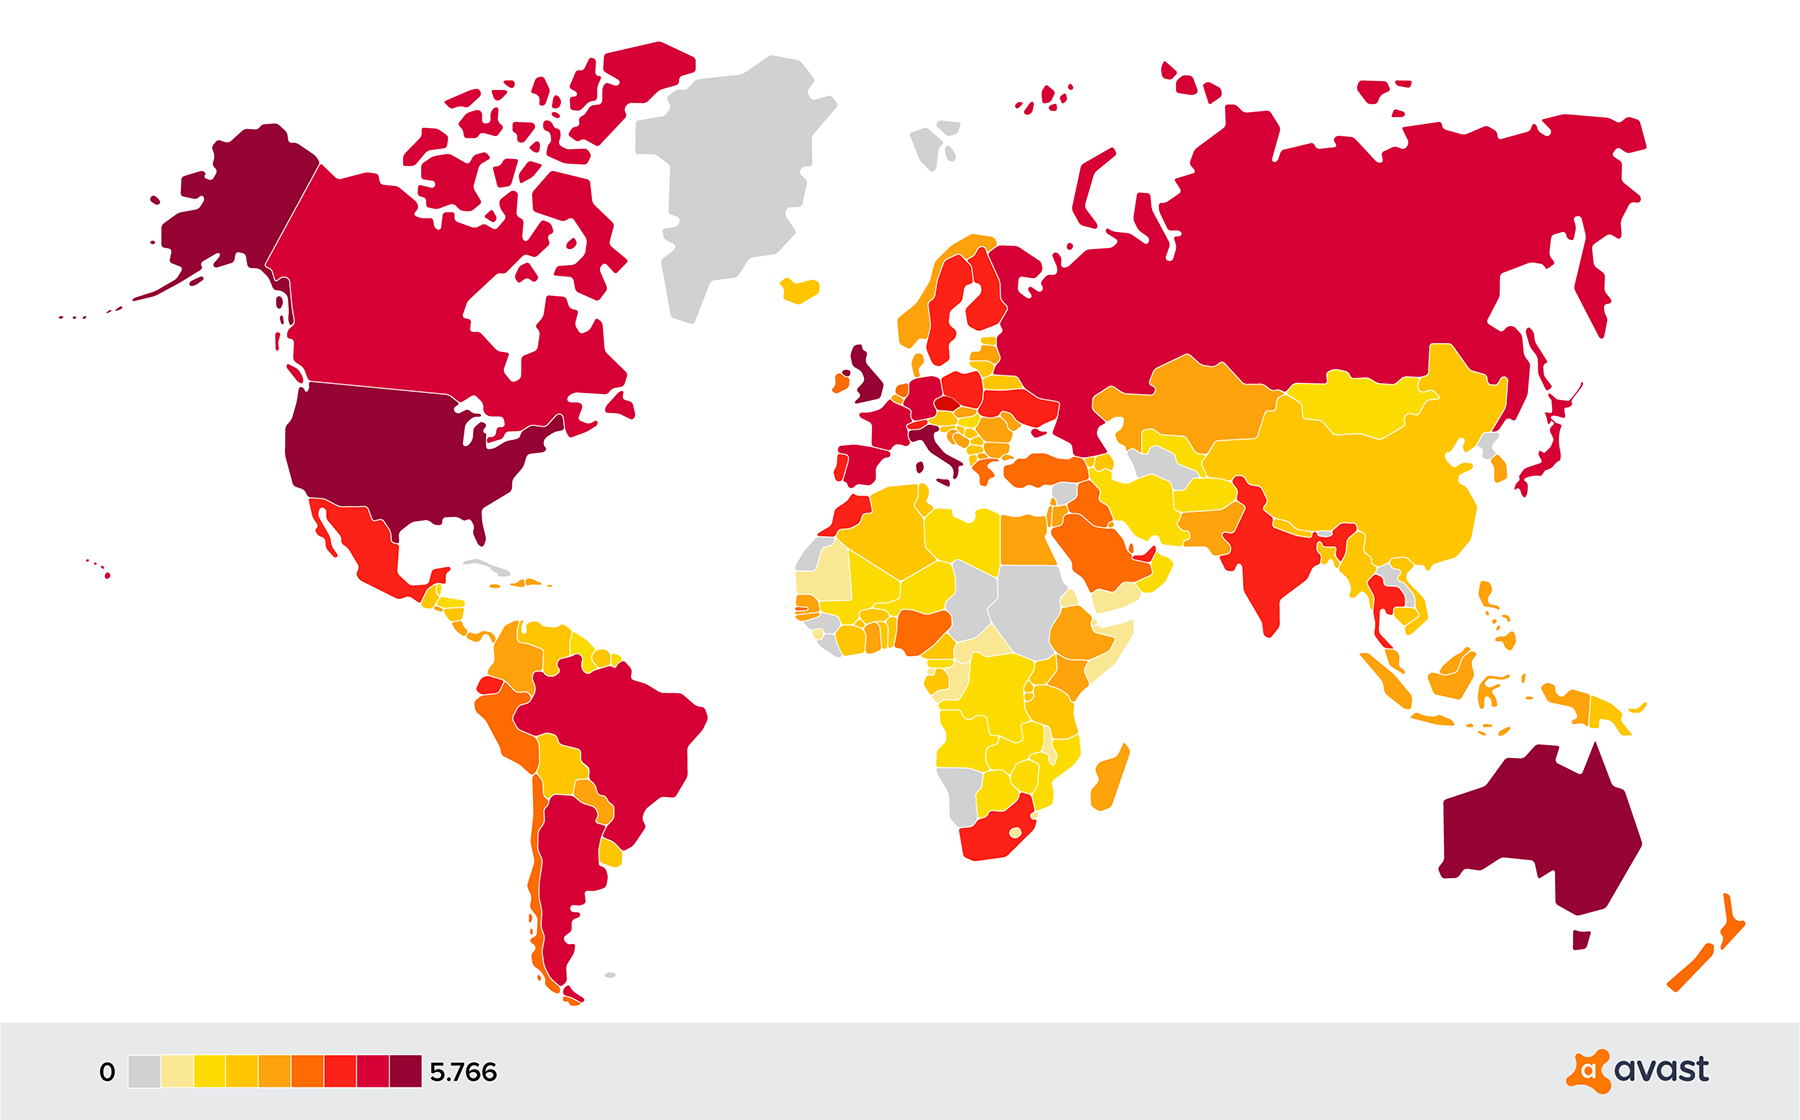 Amenazas de sextorsión en el mapa mundial